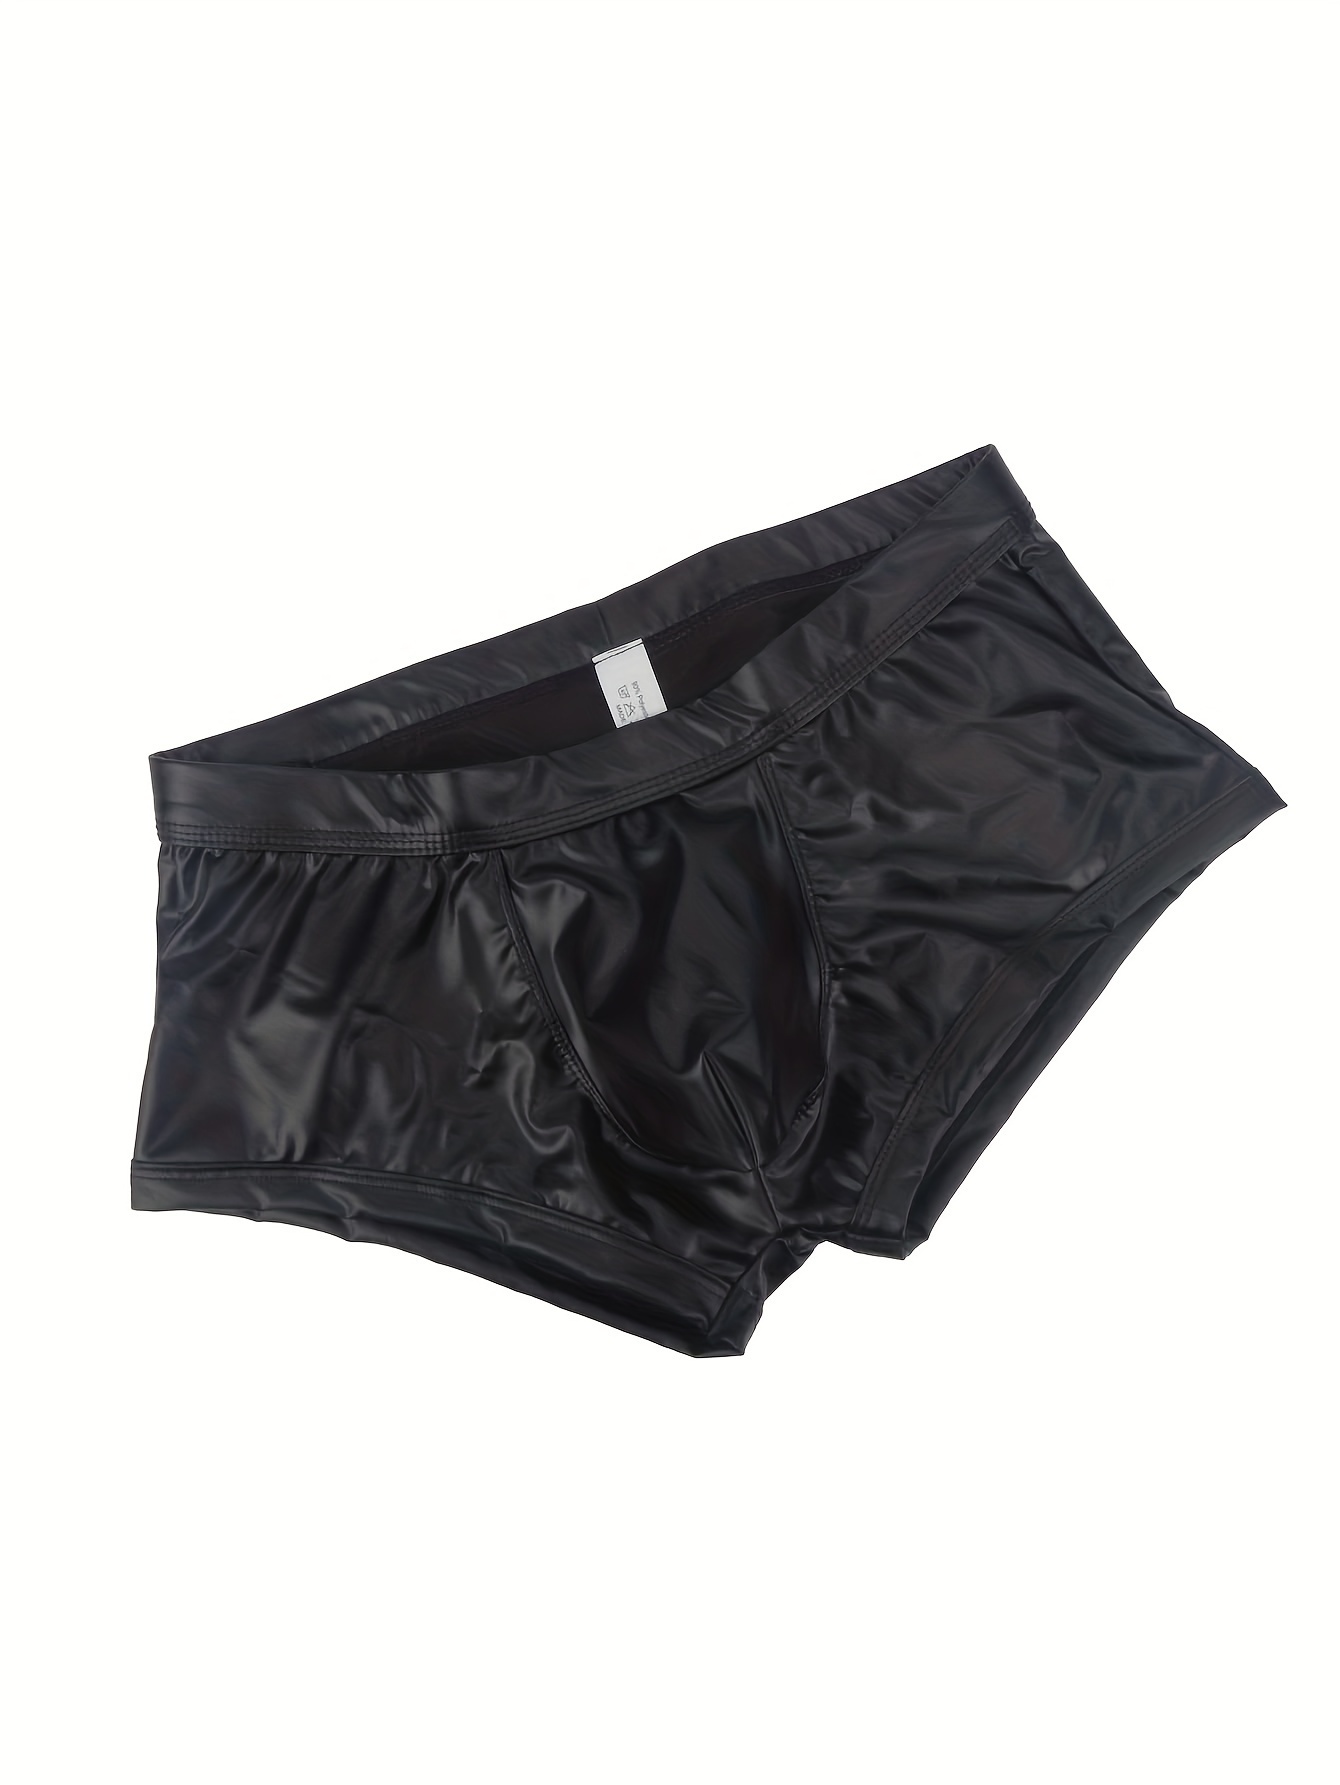 Men's Faux Leather Hollow Back Boxer Briefs Men's Sexy Underwear For Men